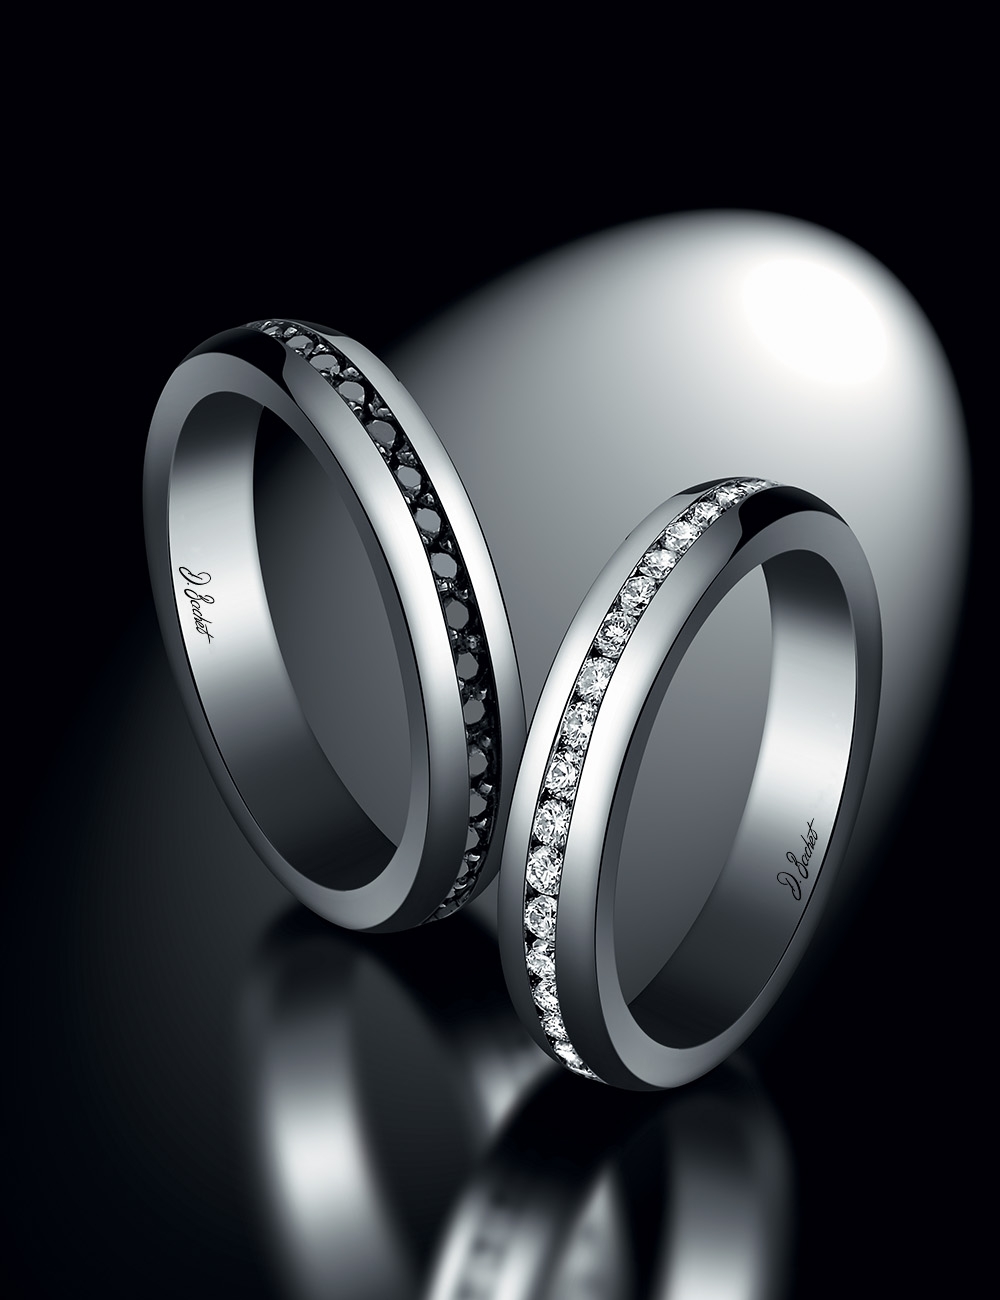 Bague de mariage homme traditionnelle et créative en platine, avec diamants noirs sertis, fabriquée en France.